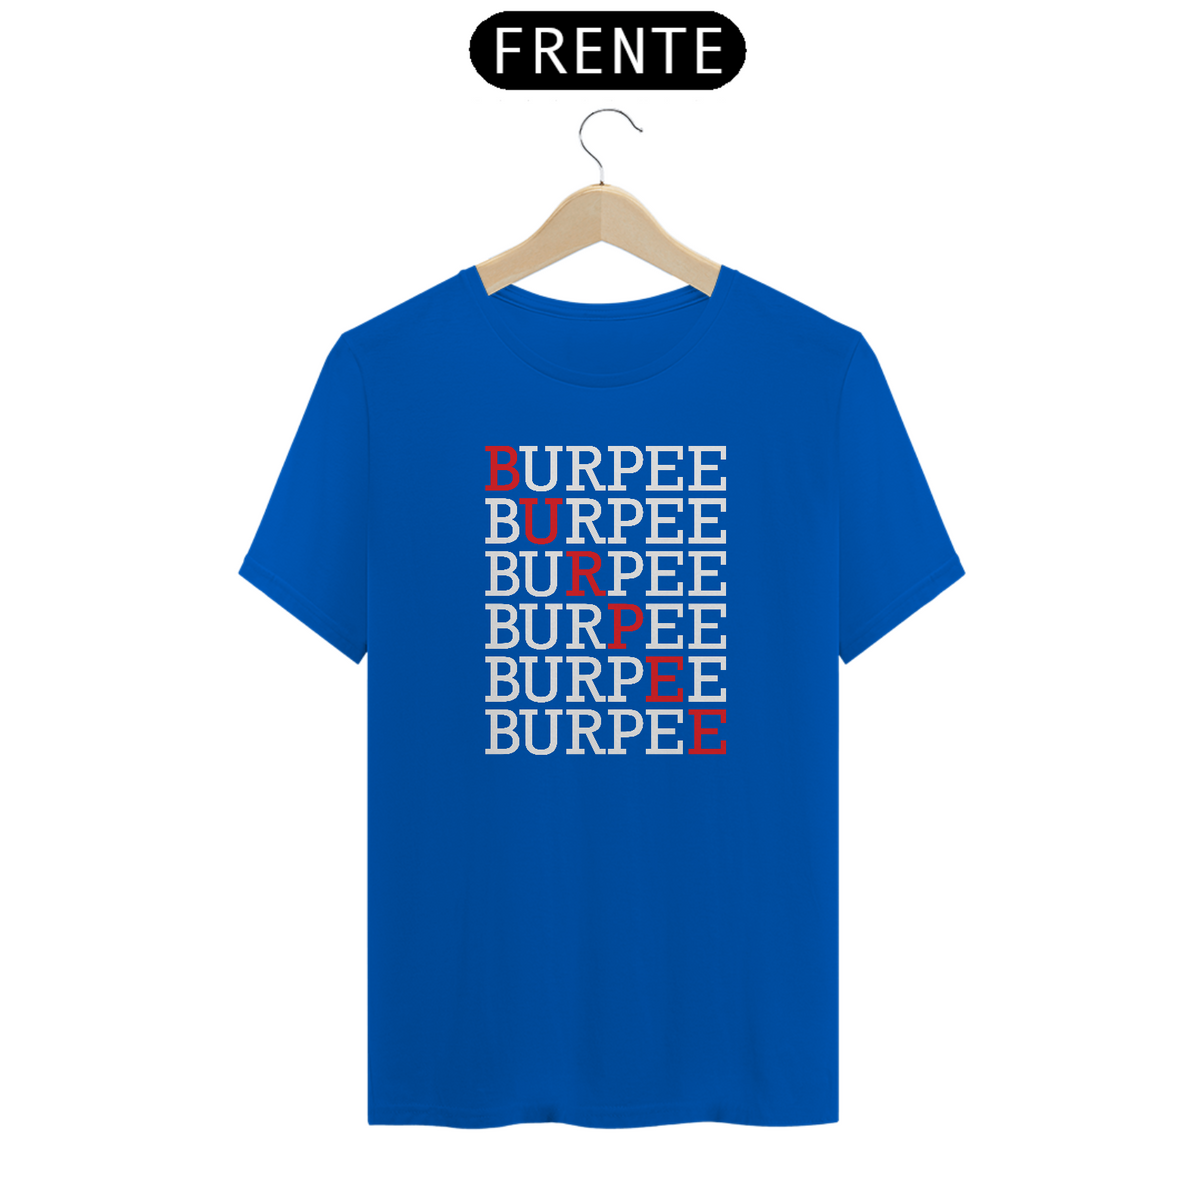 Nome do produto: Burpee